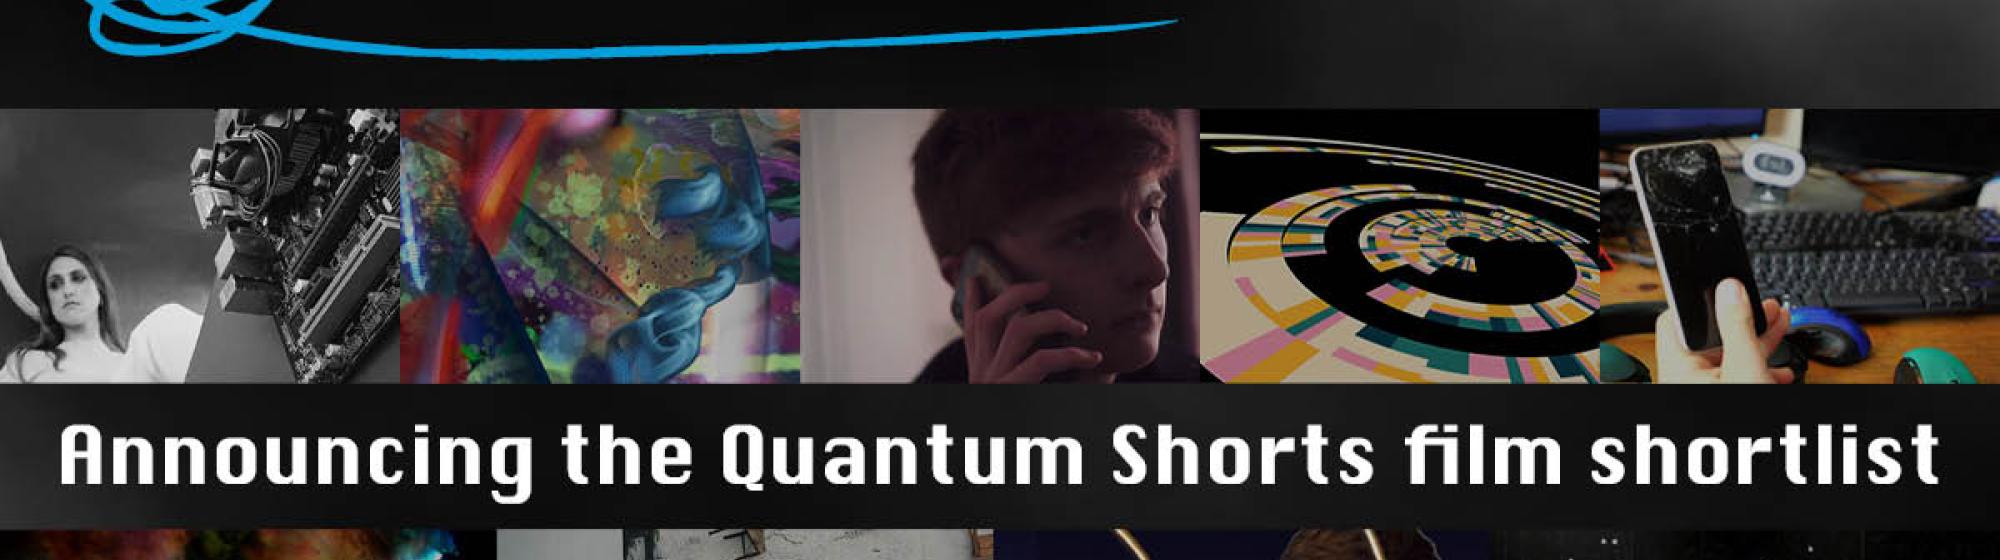 Quantum Shorts